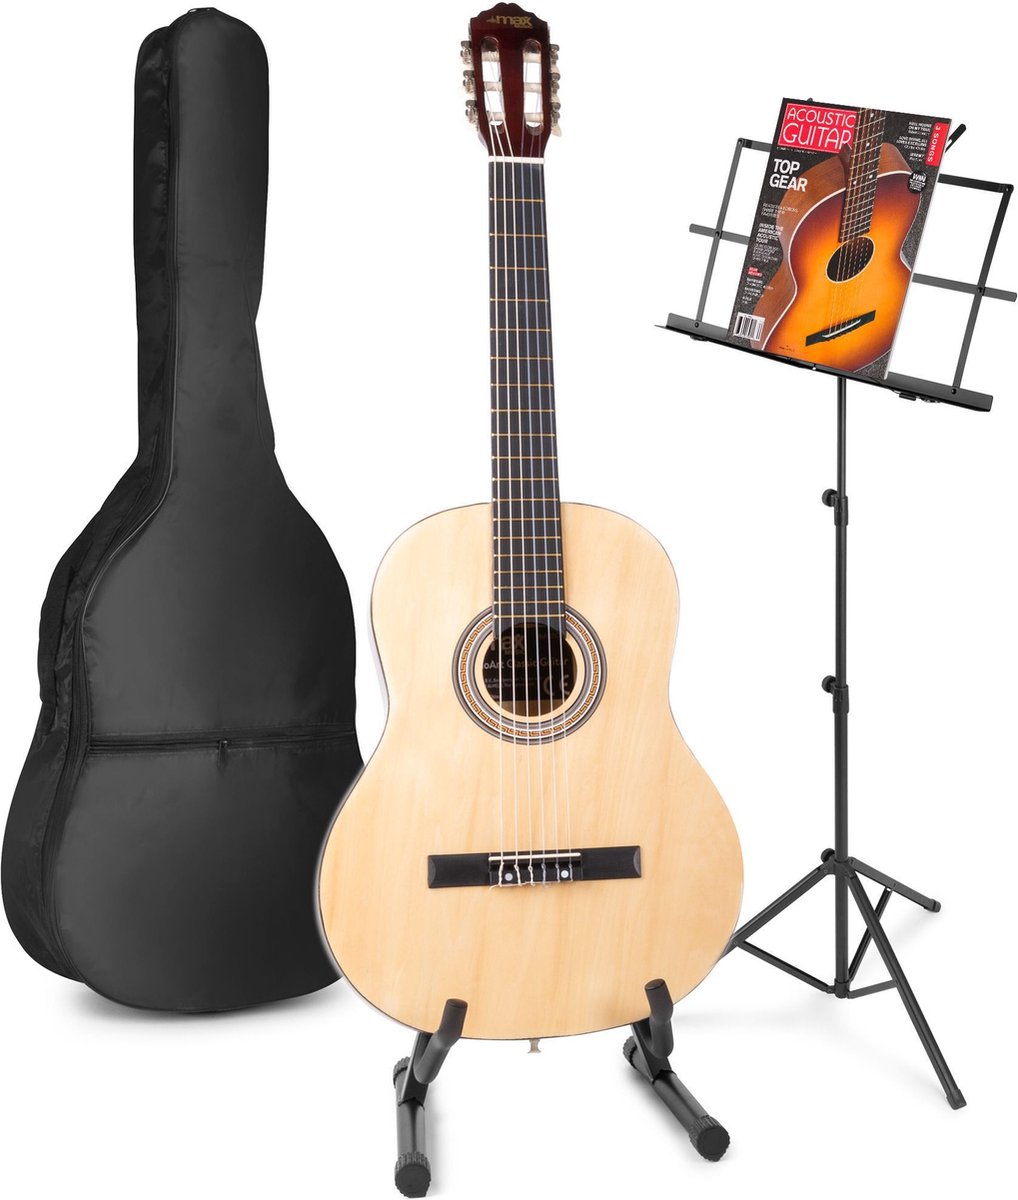 Akoestische gitaar voor beginners - MAX SoloArt klassieke gitaar / Spaanse gitaar met o.a. 39'' gitaar, gitaar standaard, muziekstandaard, gitaartas, gitaar stemapparaat en extra accessoires - Hout